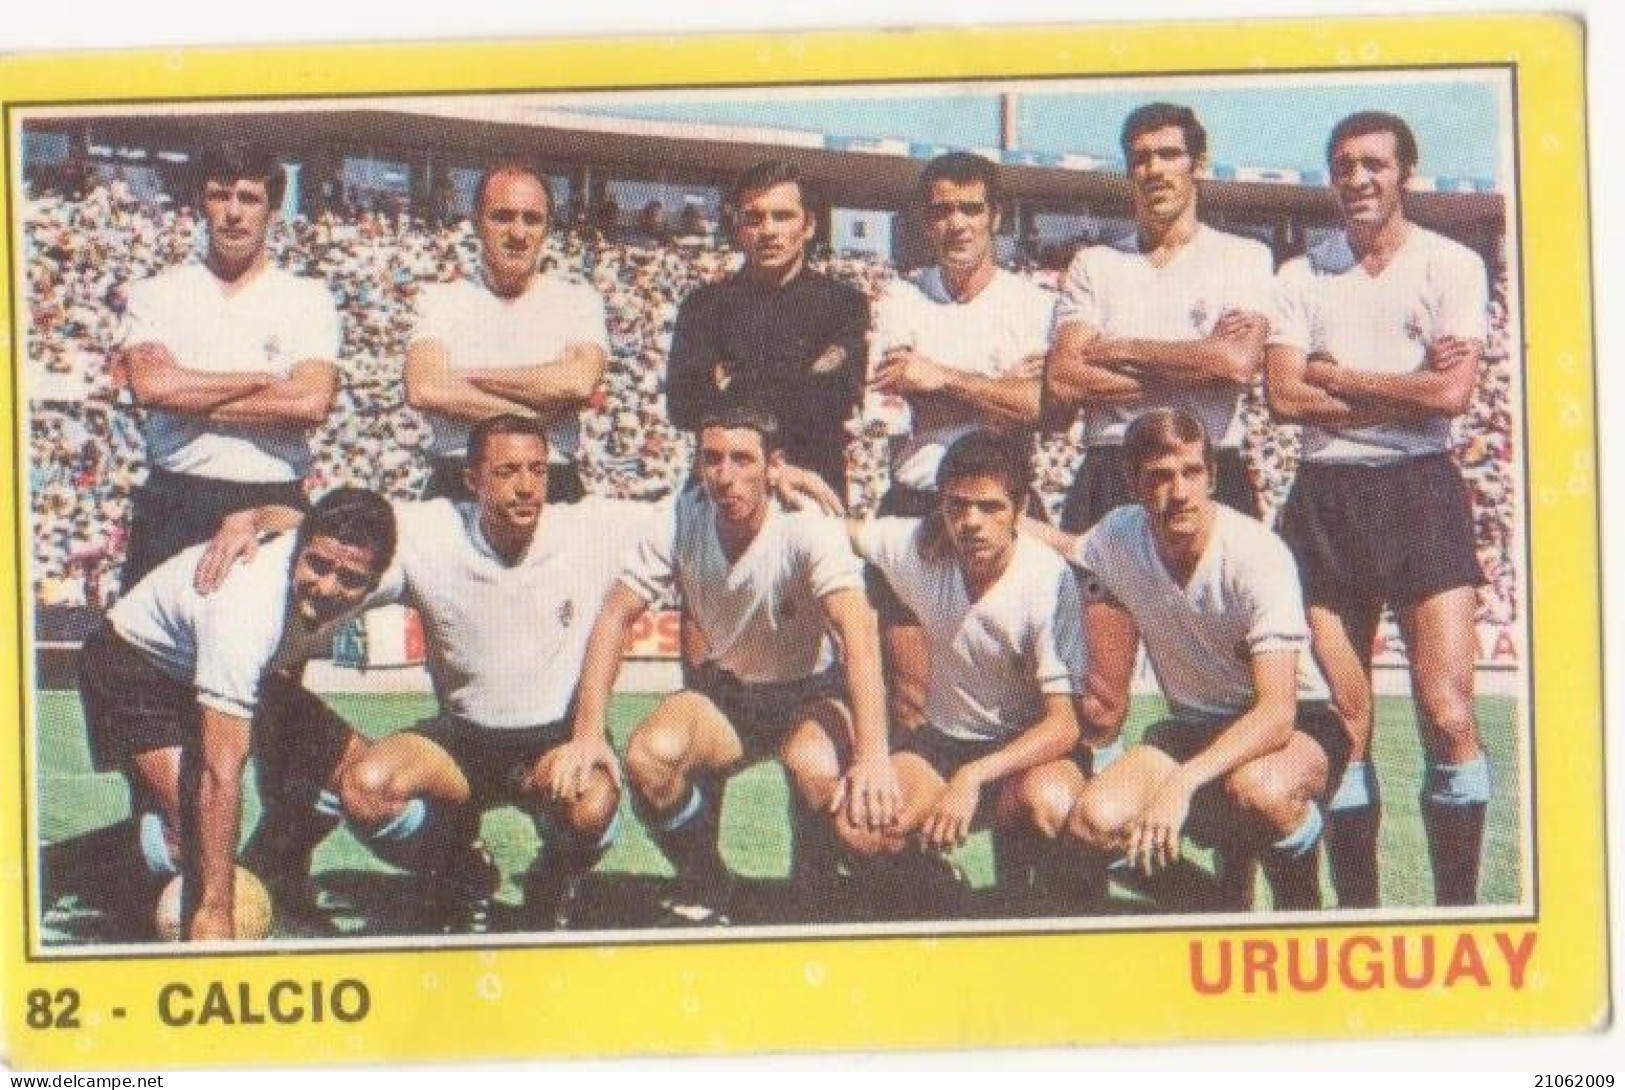 82 NAZIONALE URUGUAY CALCIO FOOTBALL SOCCER - VALIDA - CAMPIONI DELLO SPORT PANINI 1970-71 - Tarjetas